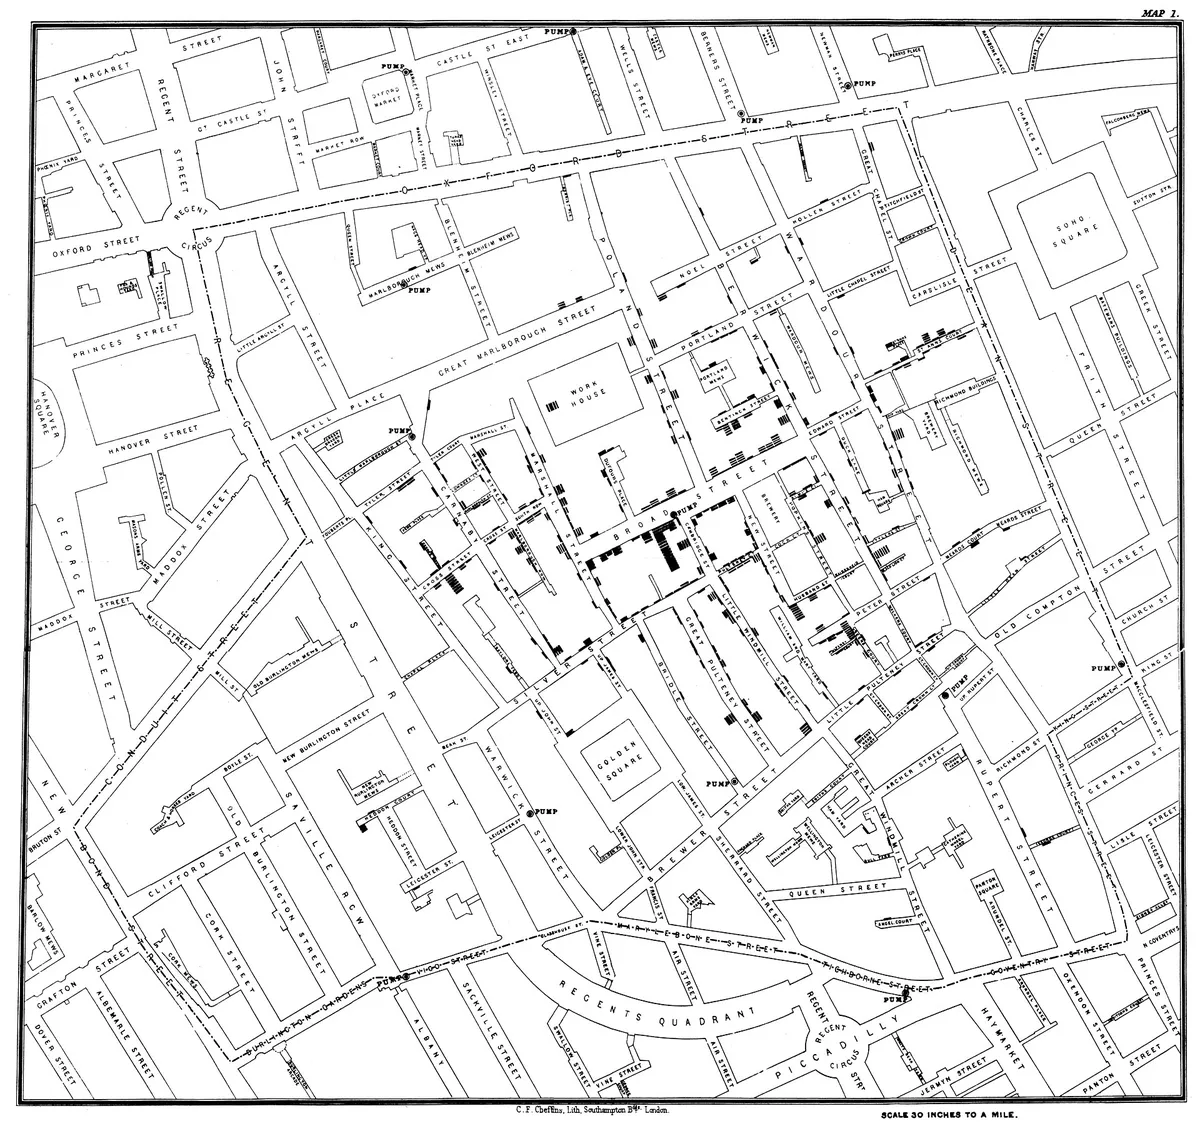 Карта распространения холеры в Лондоне врача Джона Сноу, 1854. Черным отмечены случаи заболевания. Эта карта позволила понять, что холера передается не воздушным путем, как думали раньше, а фекально-оральным путем через водопроводную систему, потому что случаи заболевания сосредоточились вокруг одной колонки для подачи воды